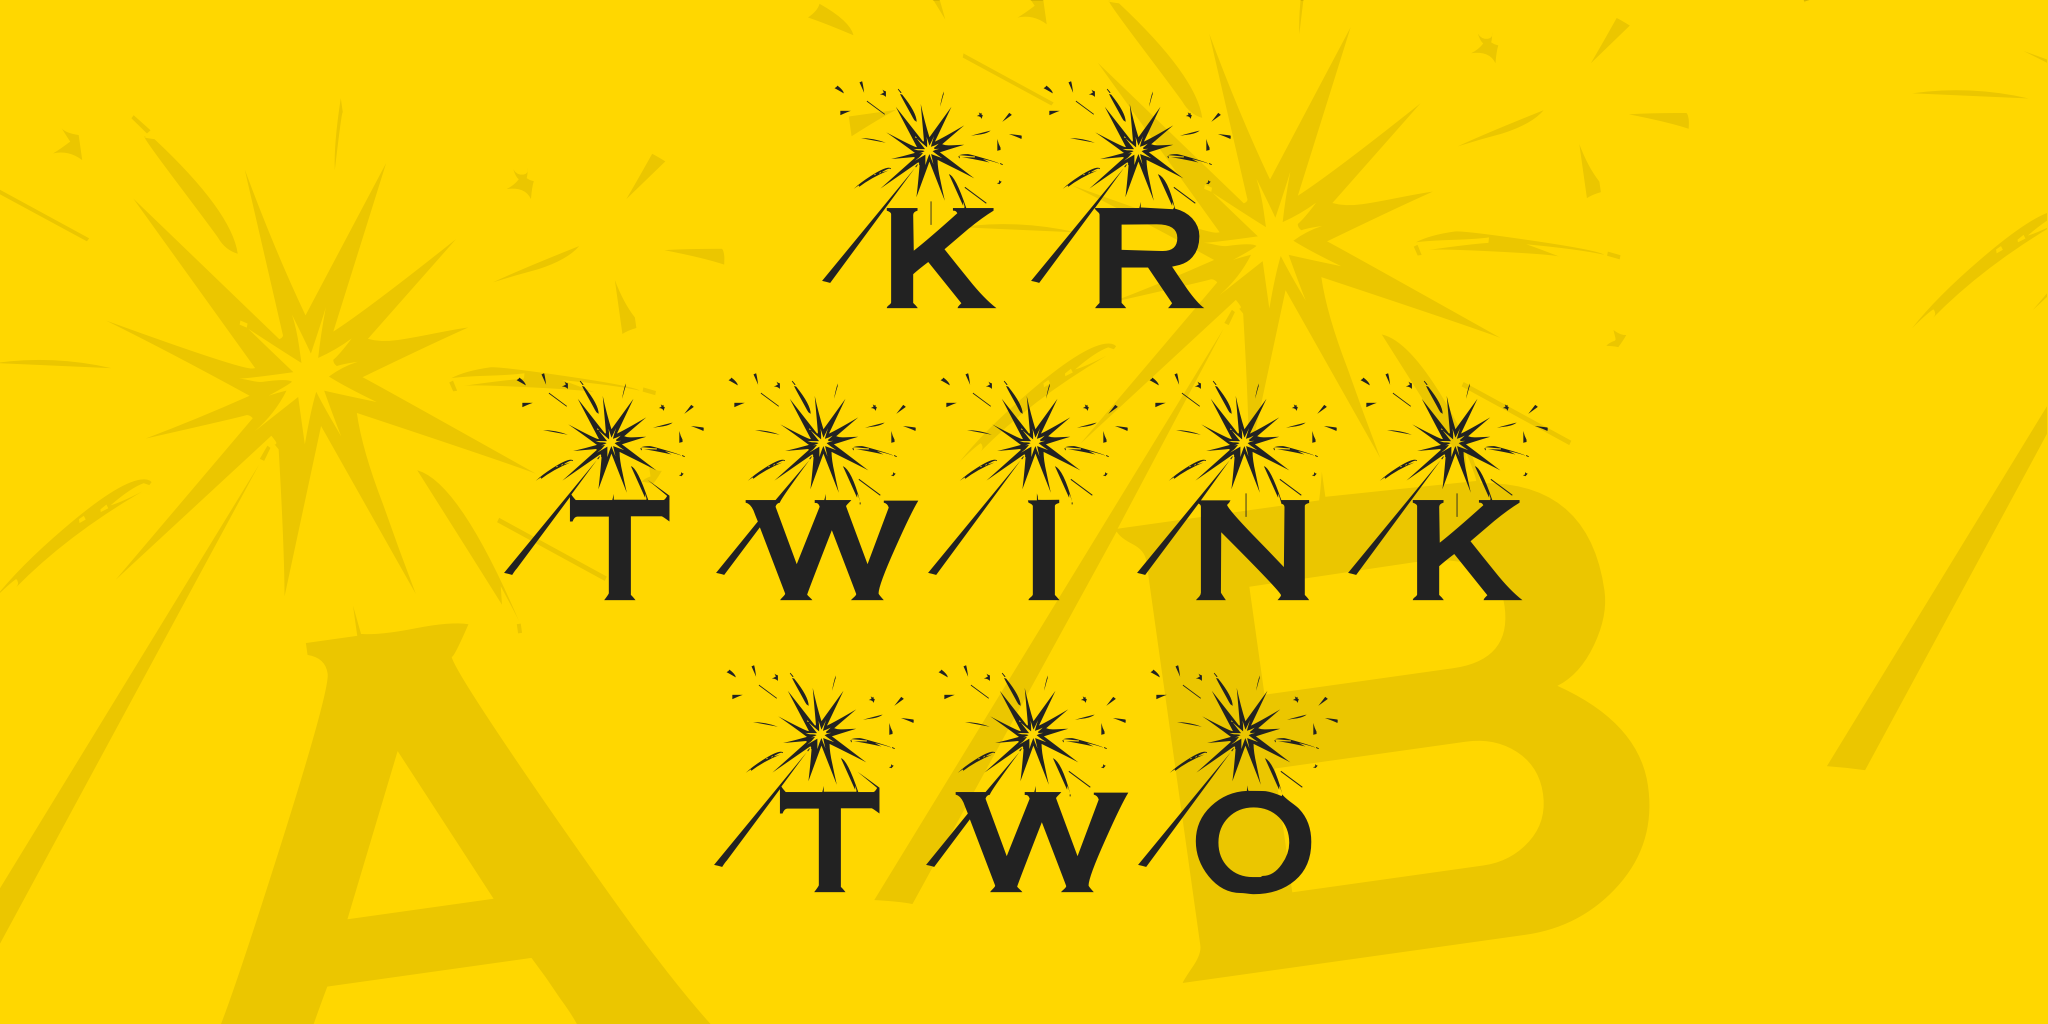 Kr Twink Two